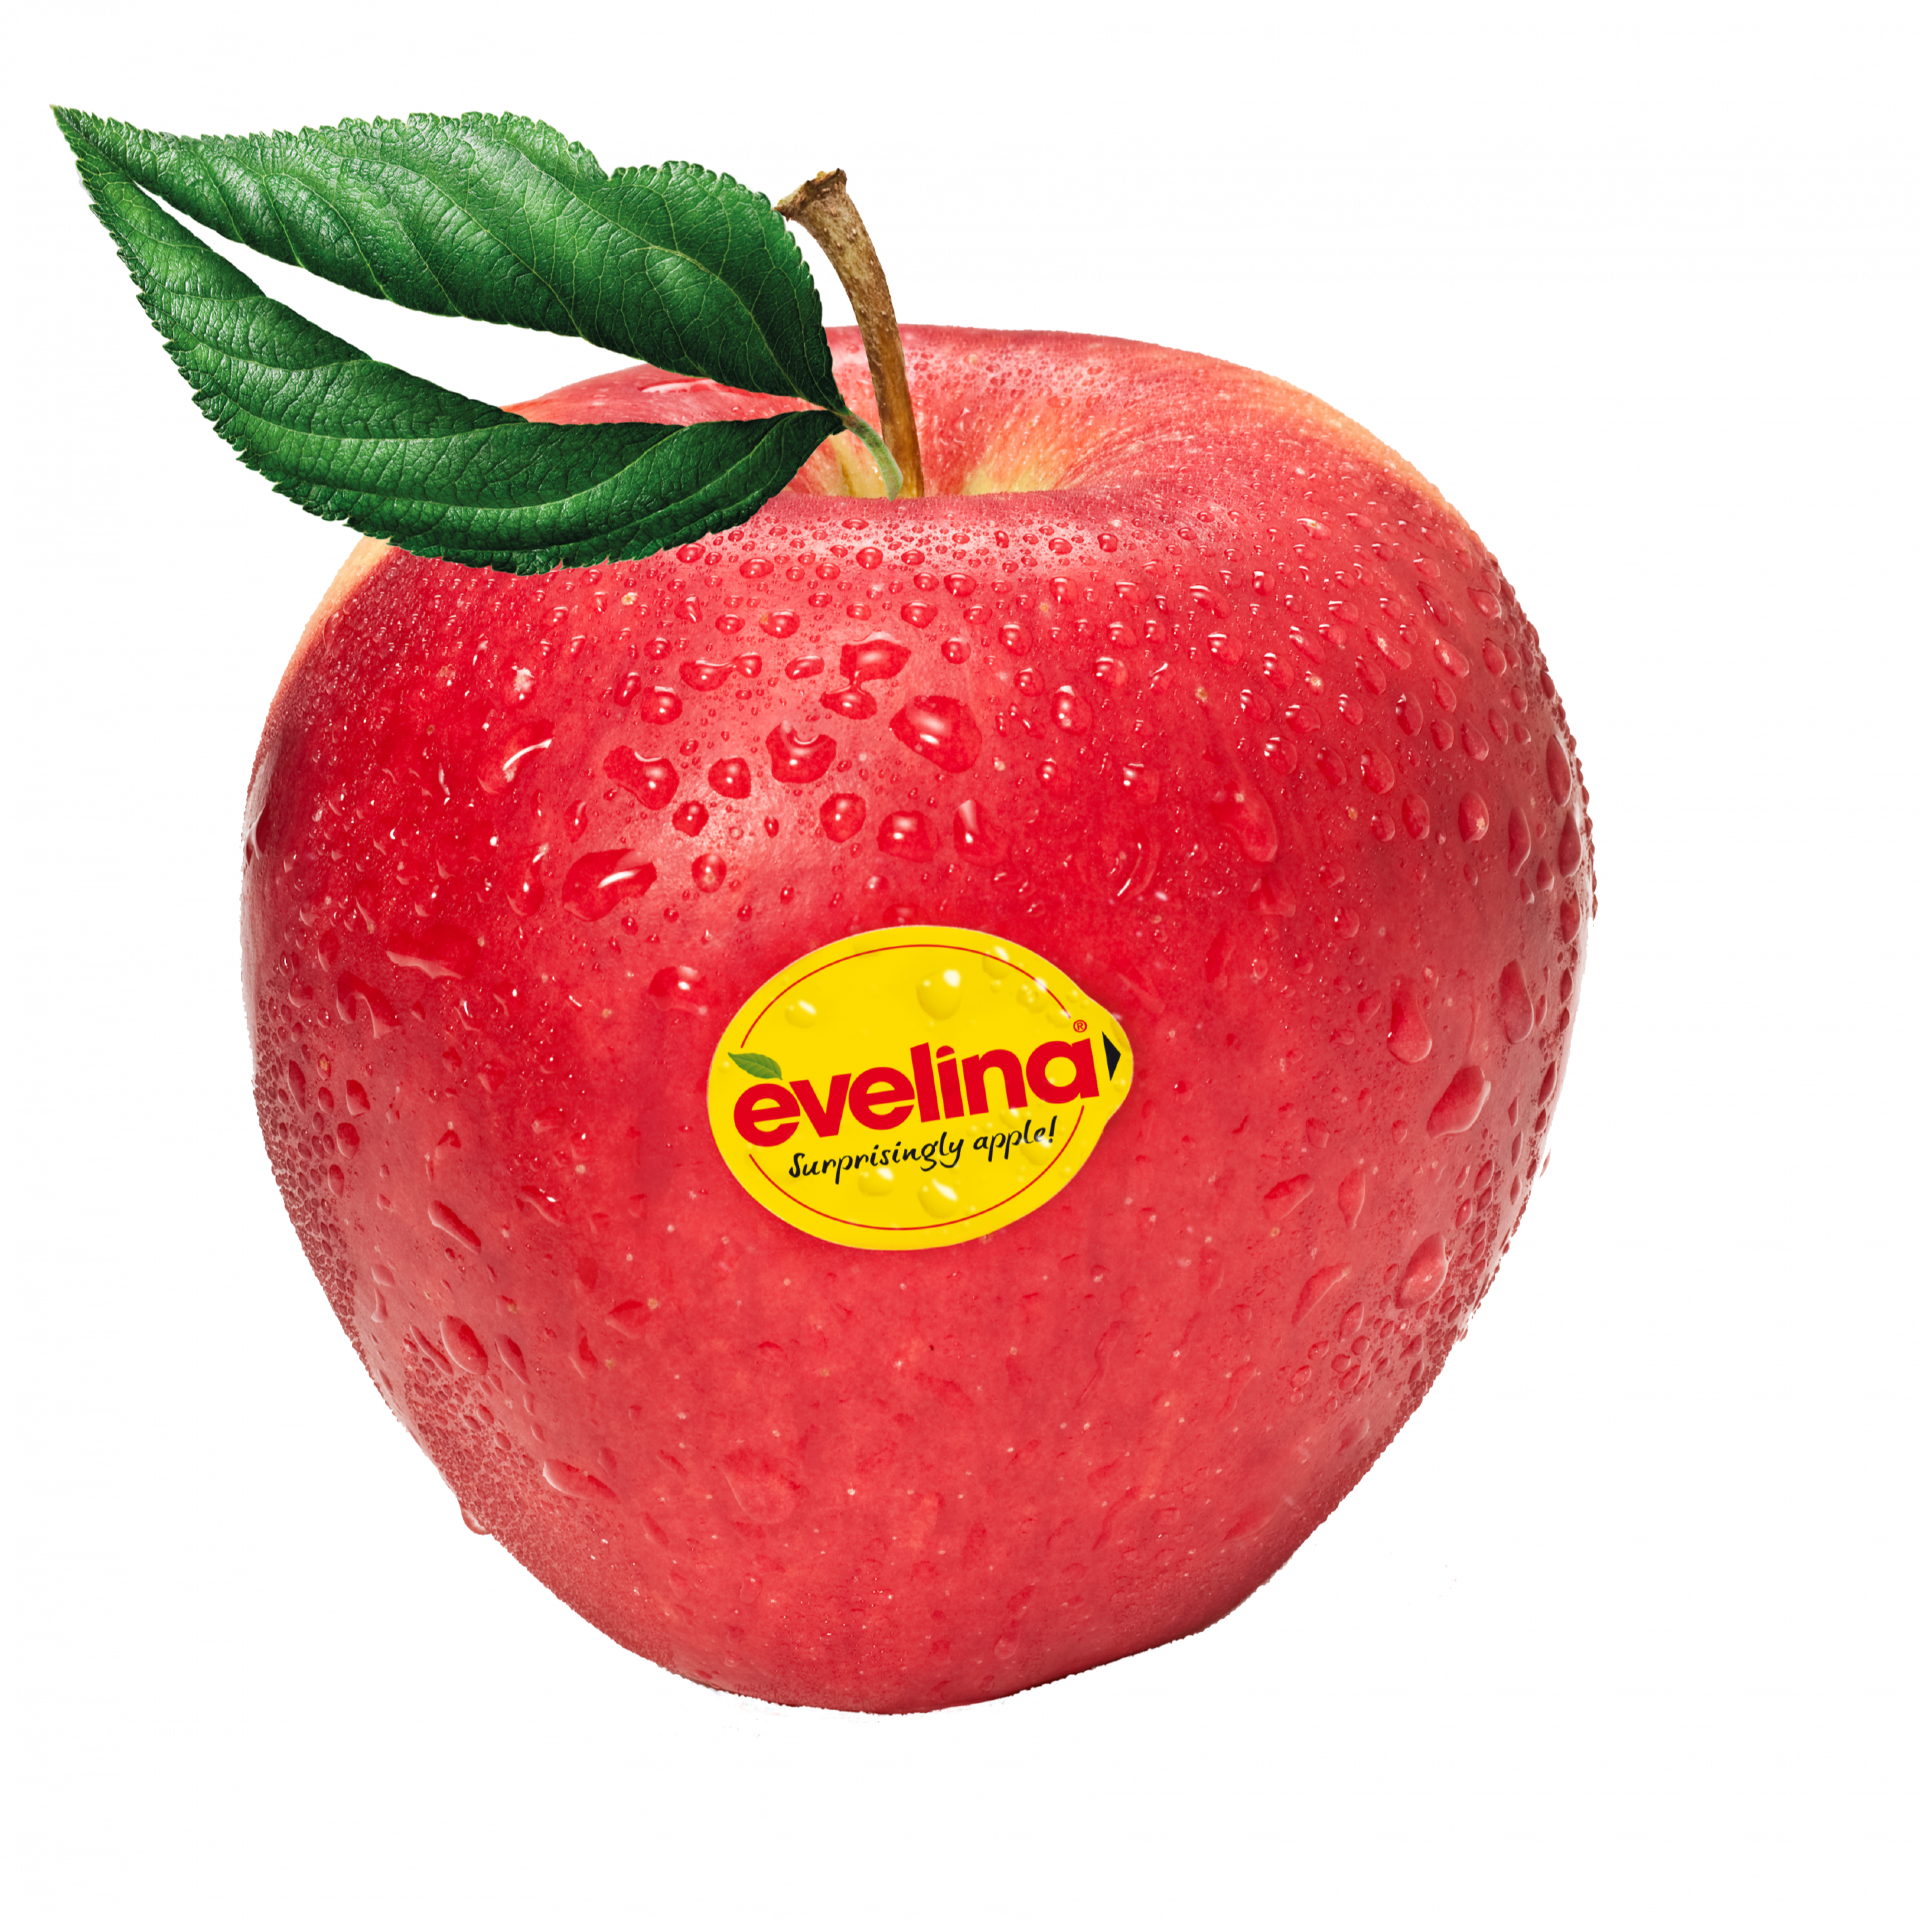 “Al onze Evelina-appelen zijn dit jaar bestemd voor de Belgische markt”